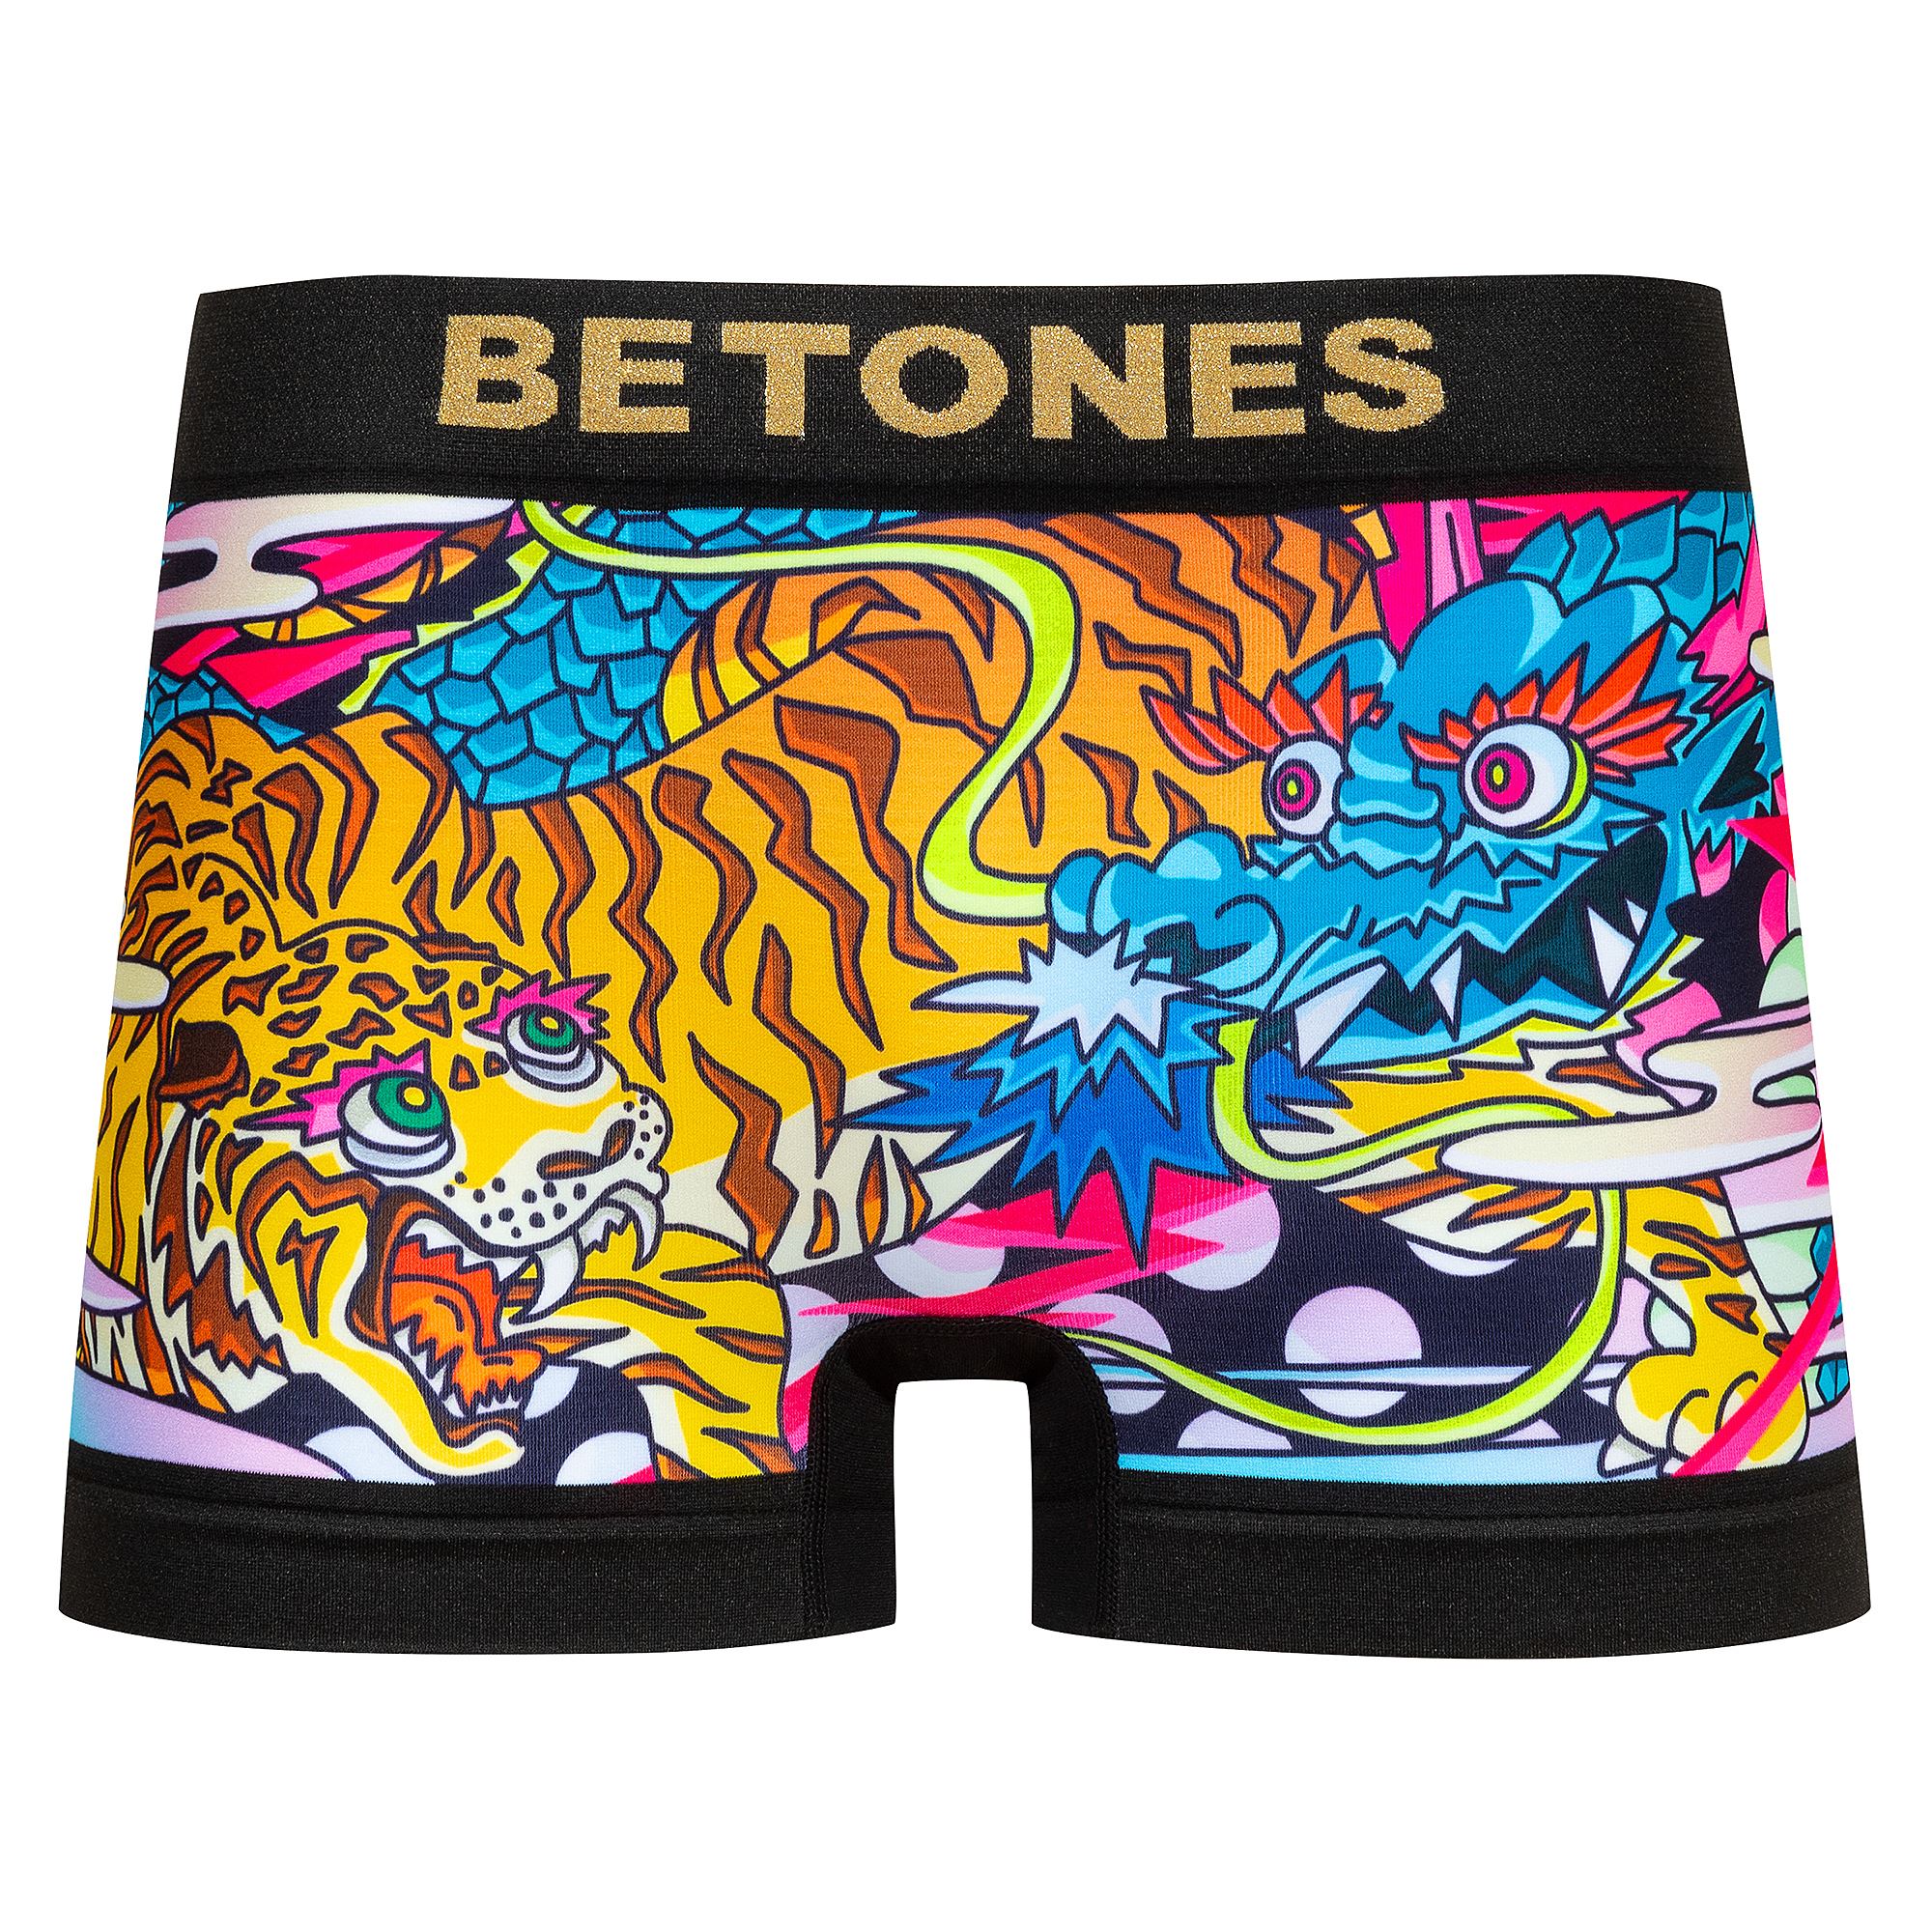 ビトーンズ ボクサーパンツ メンズ フリーサイズ BETONES 正規品 新作 かわいい かっこいい...